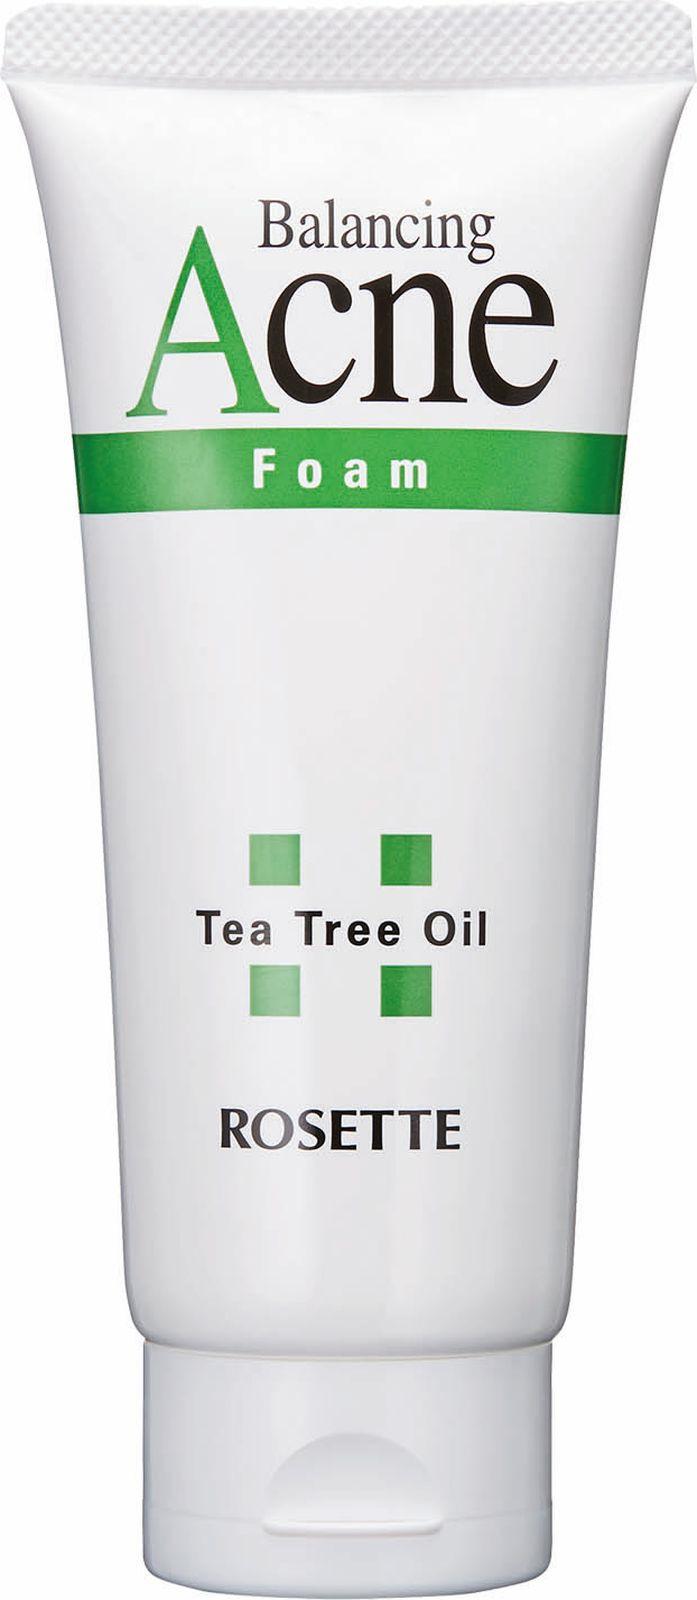 Rosette Acne Balancing Tea Tree Oil Пенка для умывания для проблемной кожи с натуральным маслом чайного дерева 120 гр